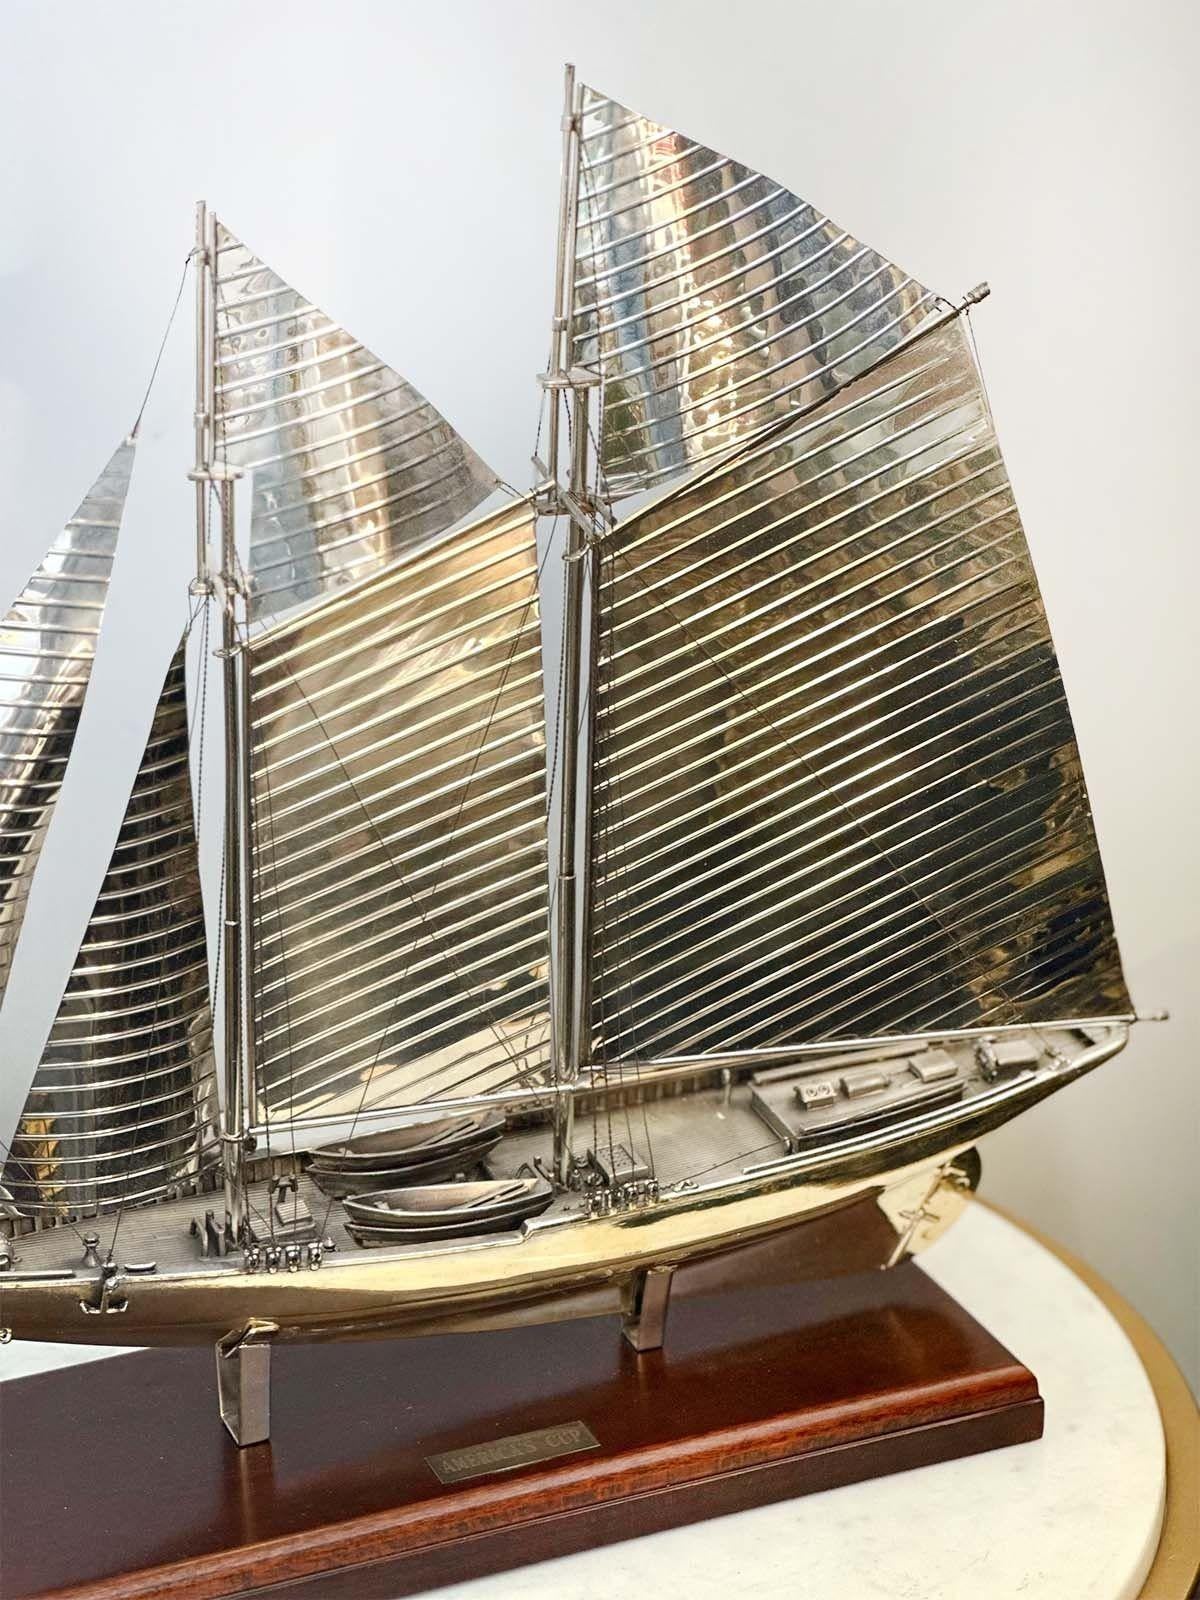 Seltene Bootsauszeichnung aus 925er Sterlingsilber des America's Cup auf einem Holzsockel von Scully & Scully. Handgefertigt in New York, 20. Jahrhundert.
*Signiert auf dem Silber von Scully & Scully 
Abmessungen:
16,5 